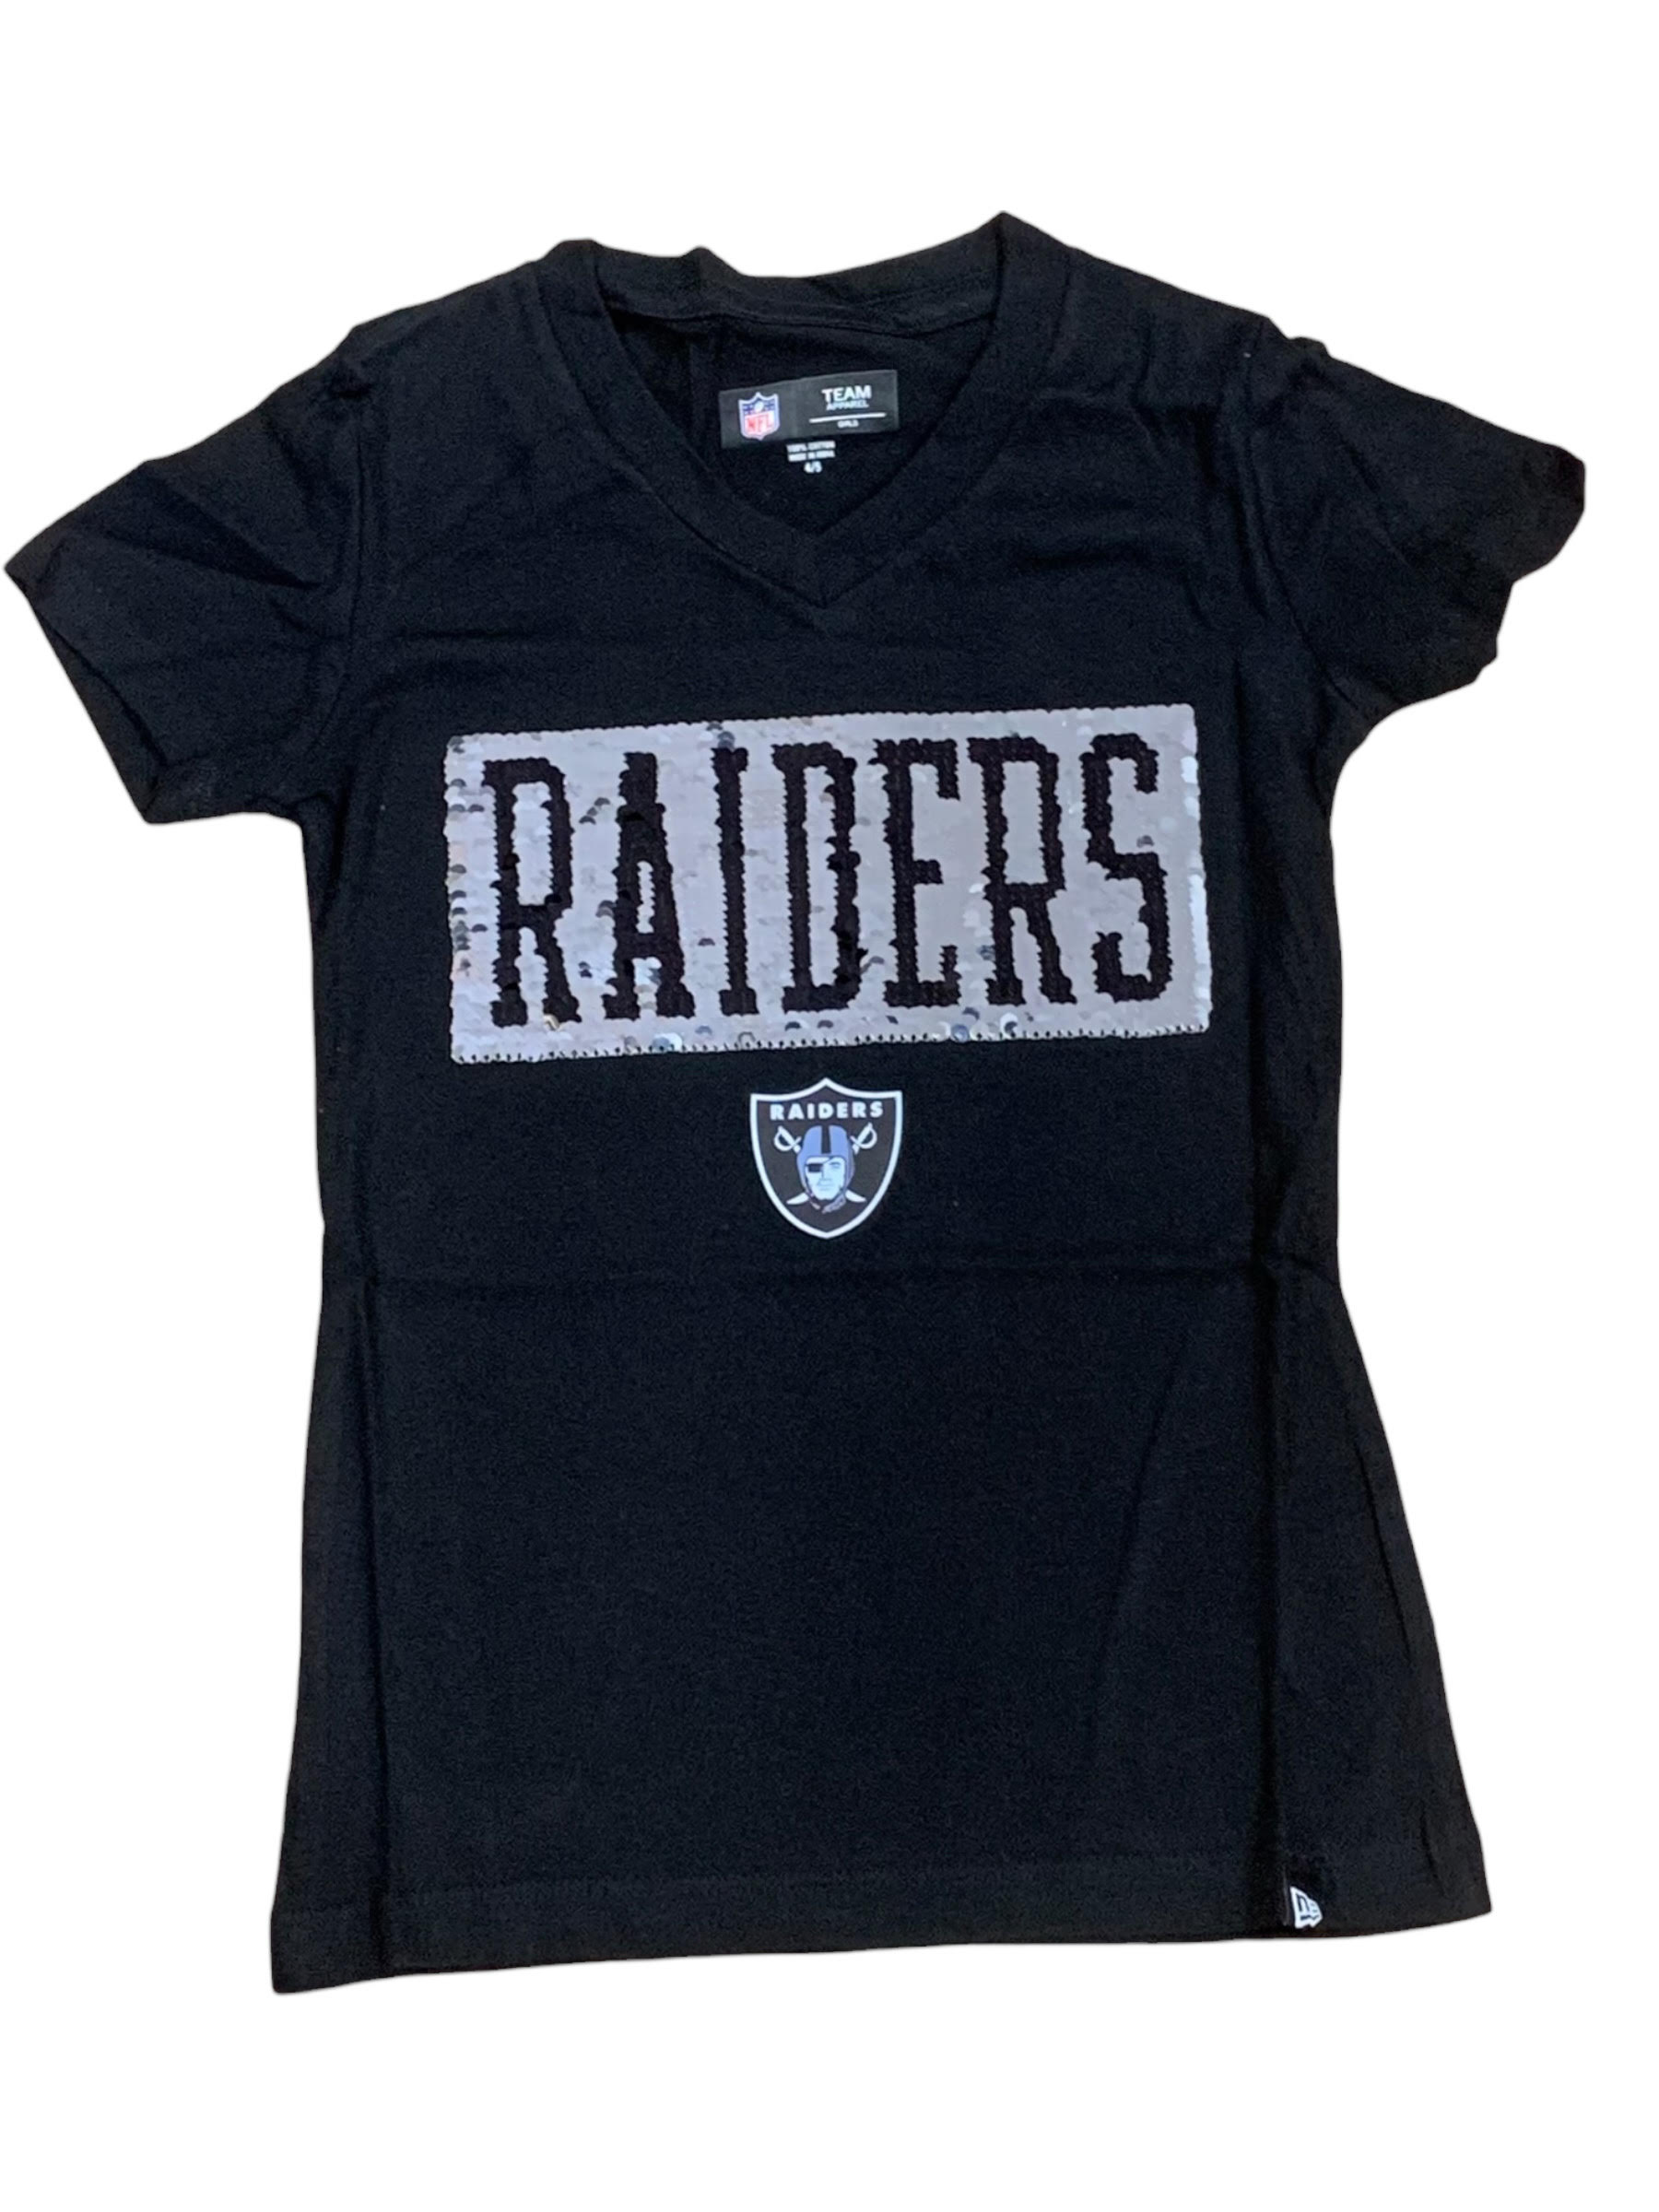 Rhinestone lips Las Vegas Raiders shirt t-shirt by To-Tee Clothing - Issuu